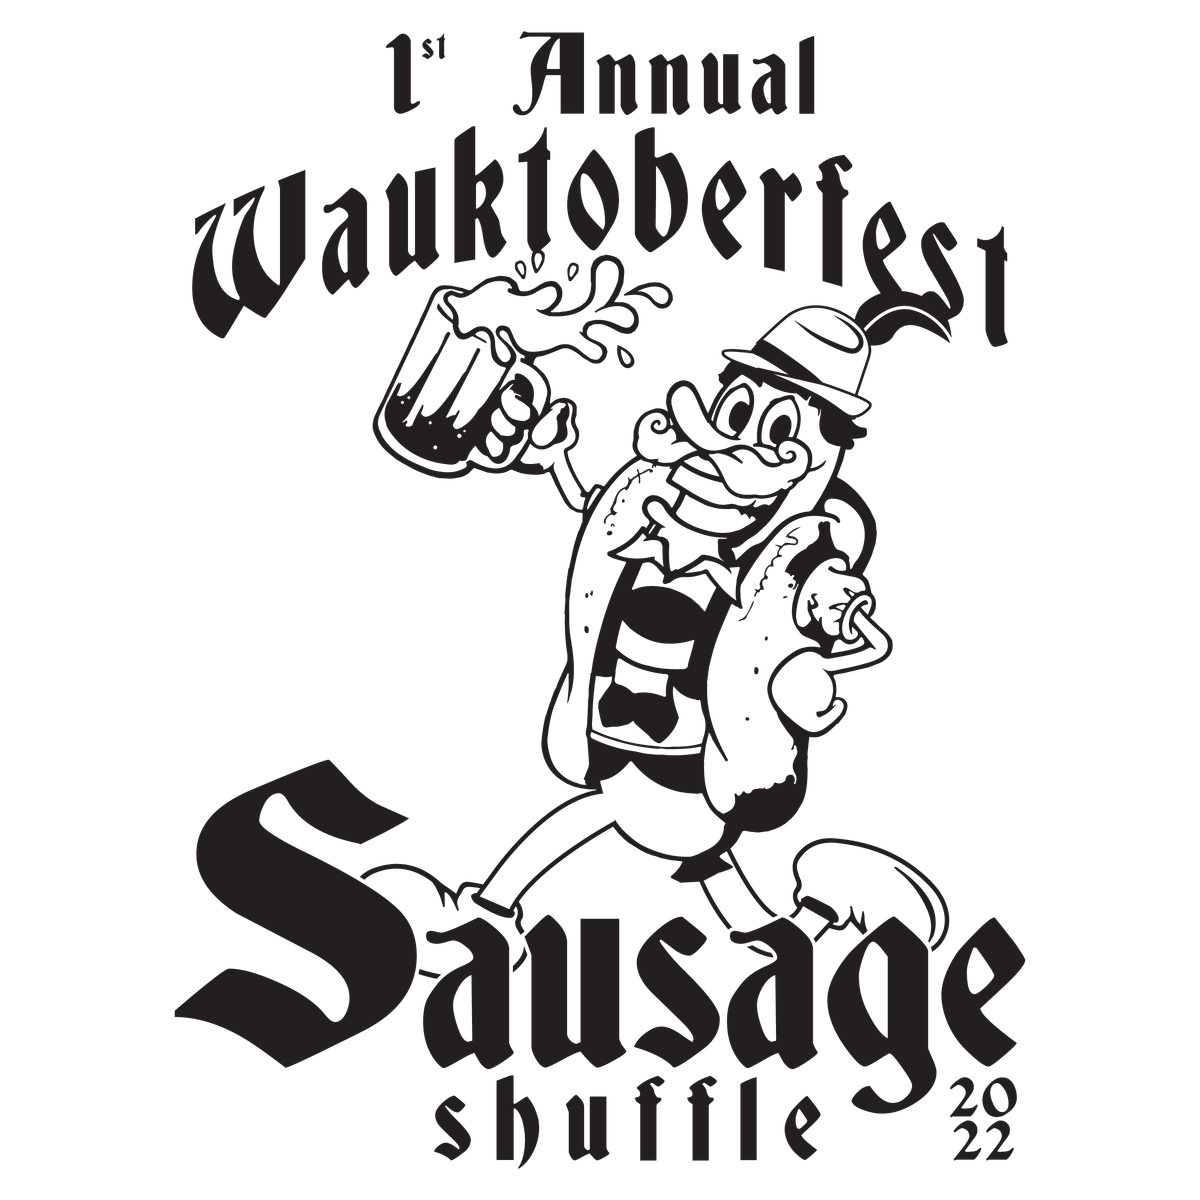 2024 Wauktoberfest's Sausage Shuffle 5K